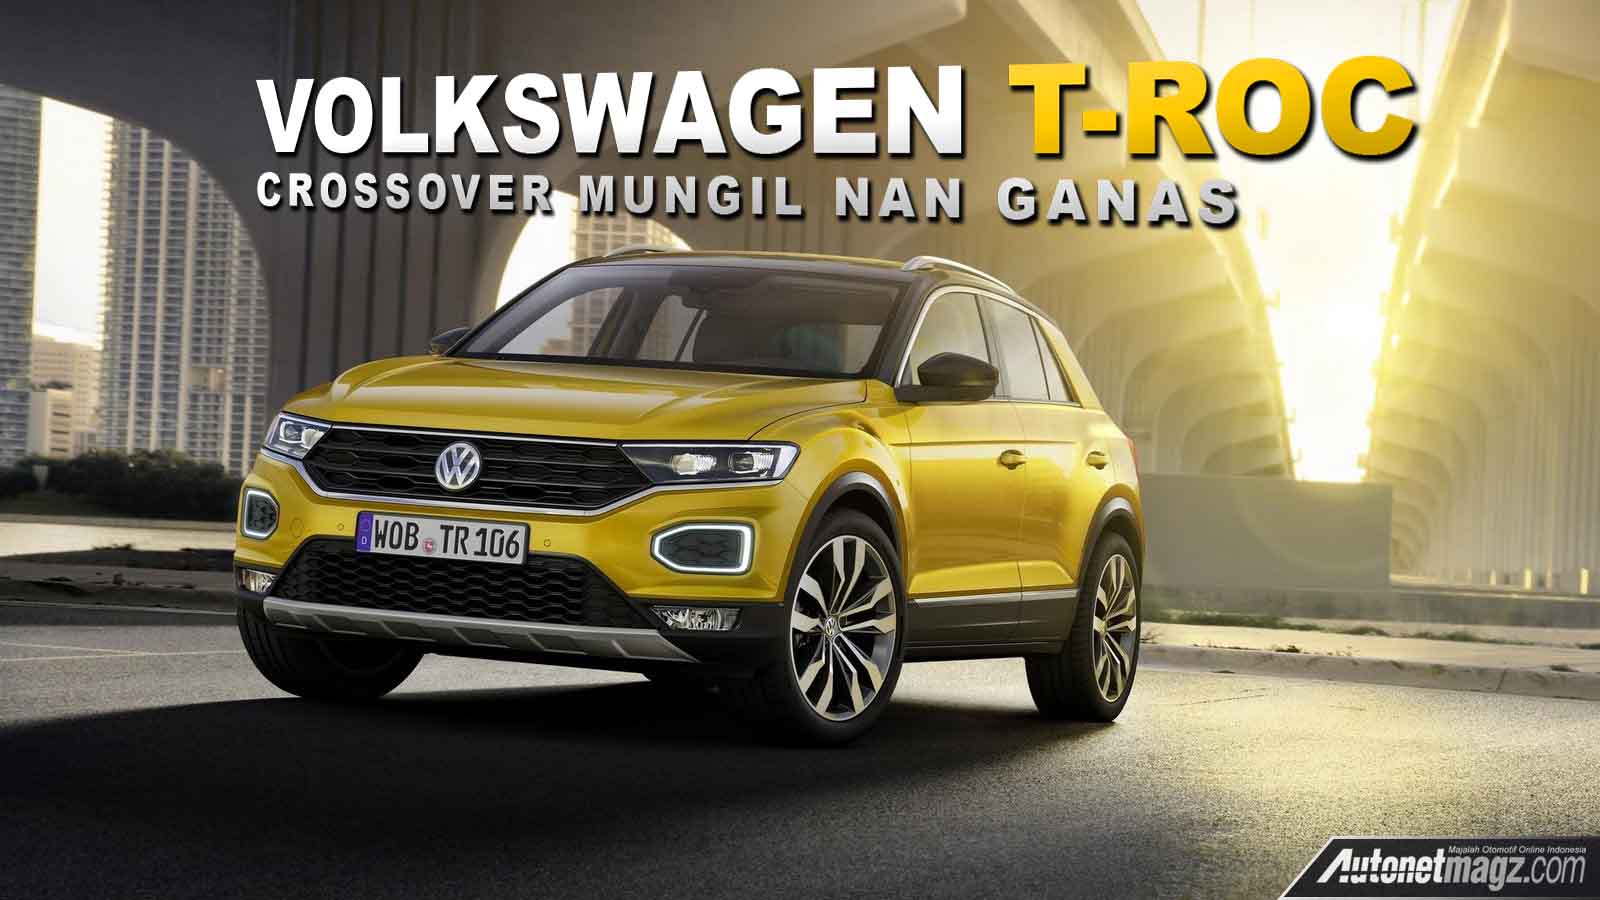 , Volkswagen T-Roc cover: Volkswagen T-Roc cover